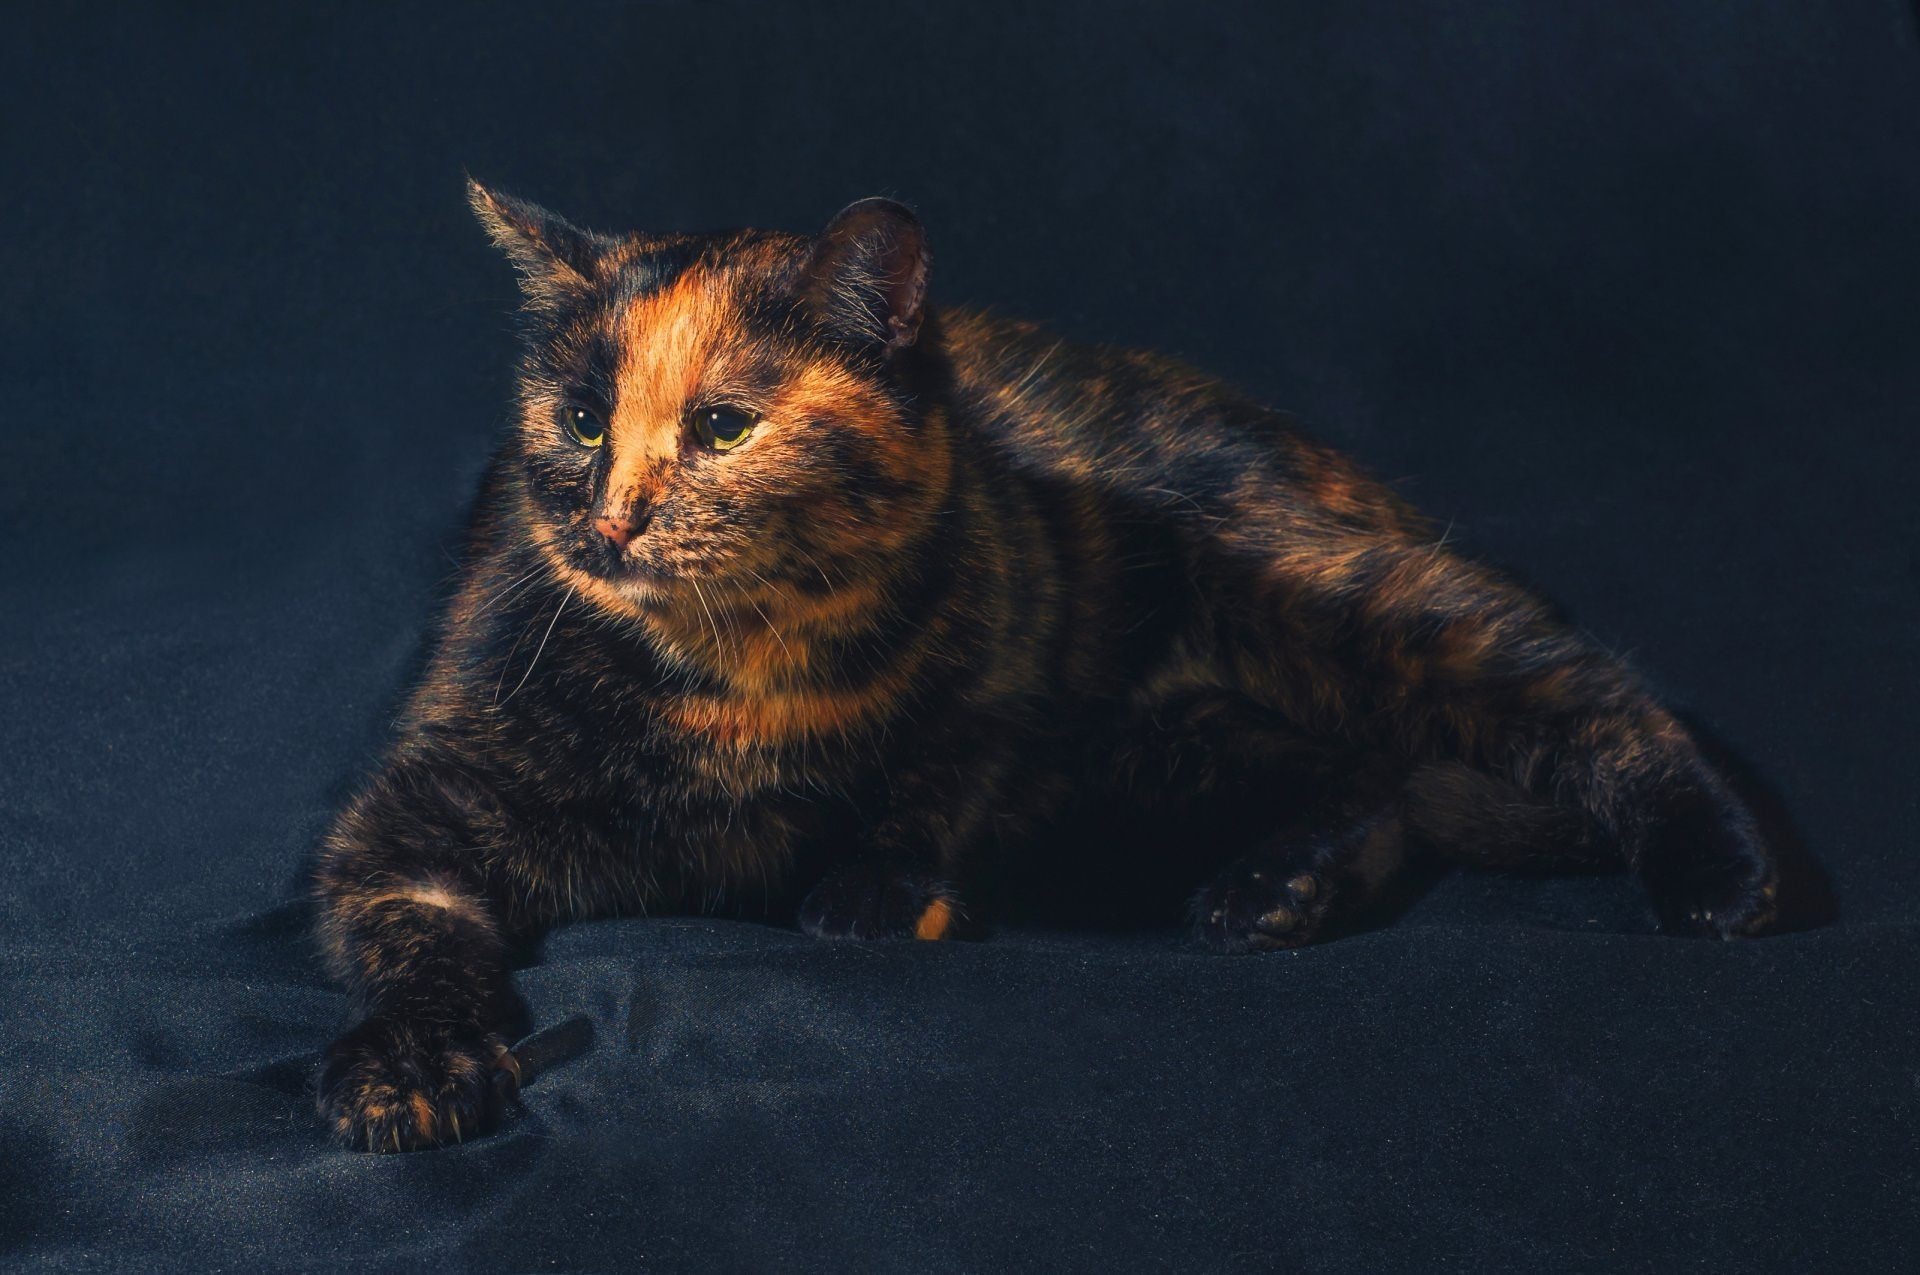 Фото британской кошки черепахового окраса